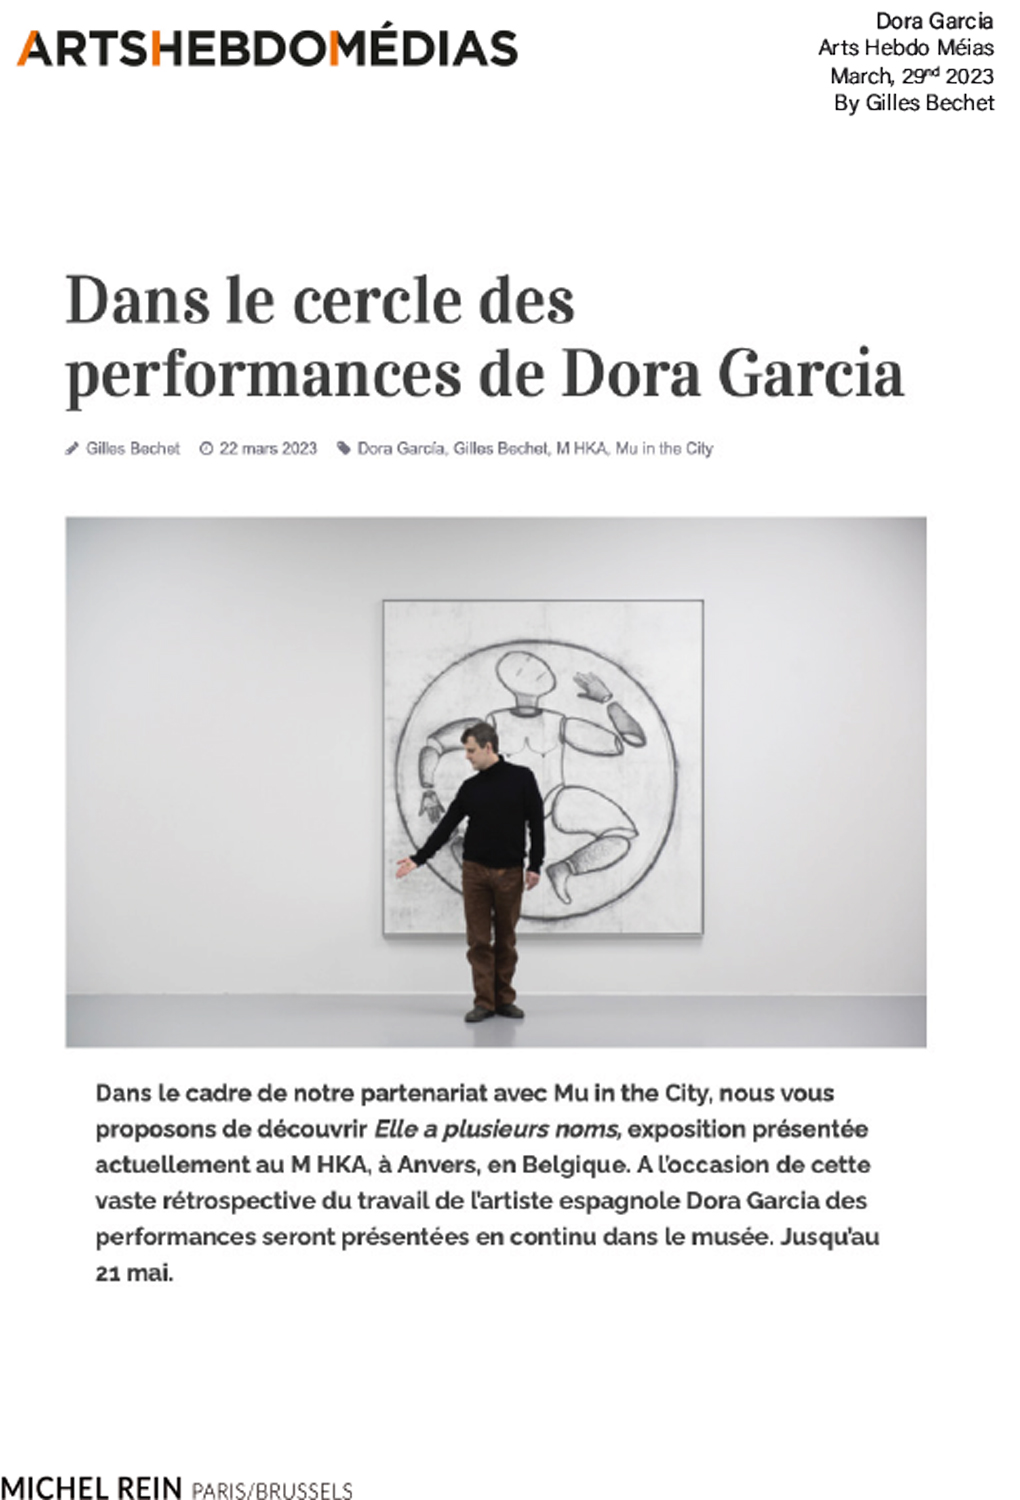 Dans le cercle des performances de Dora Garcia - Arts Hebdo Mdias